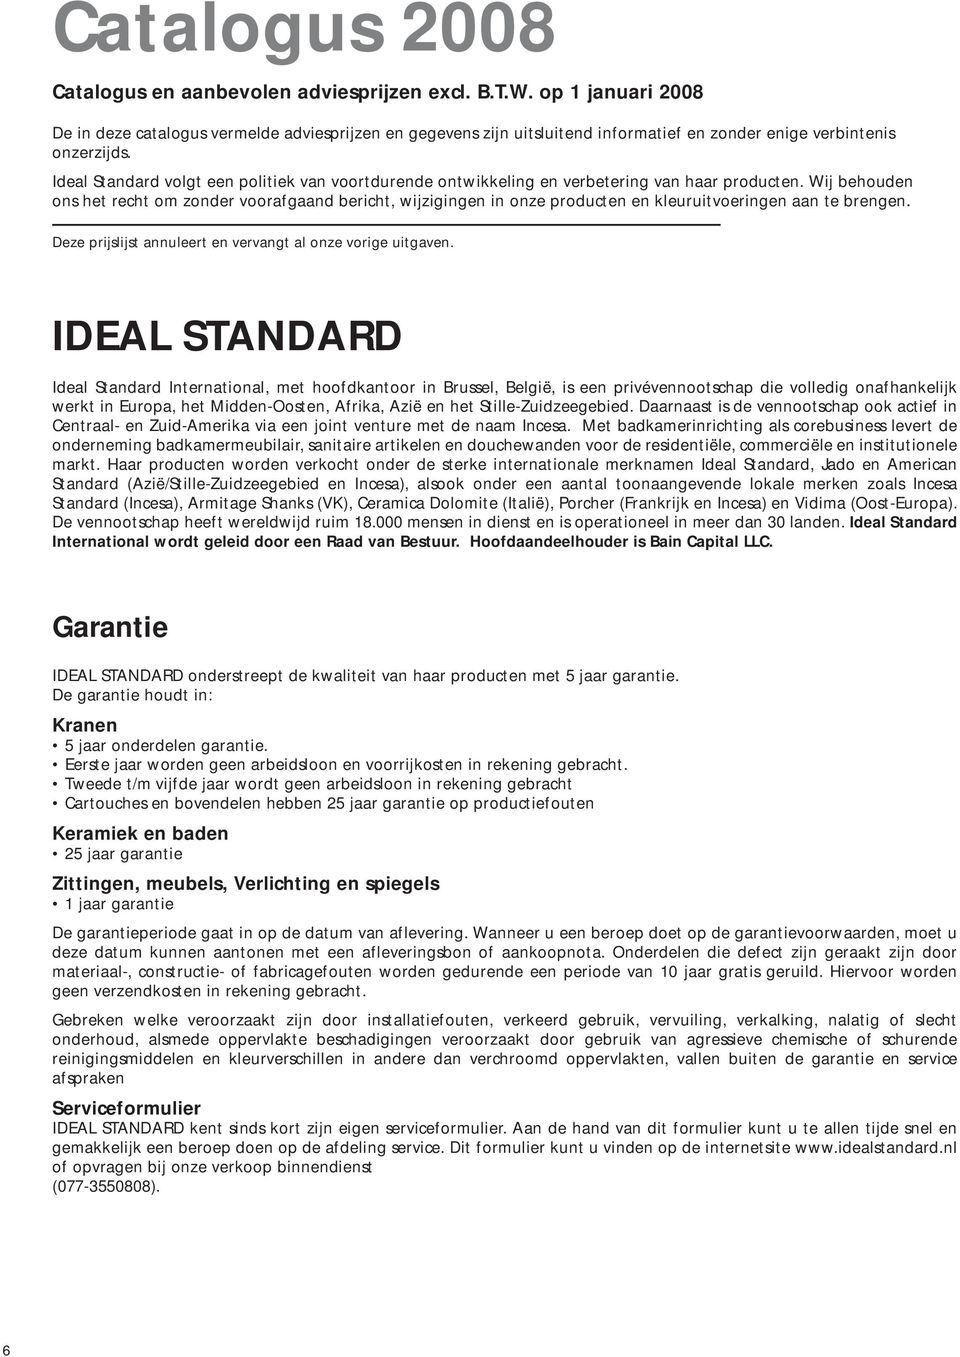 Ideal Standard volgt een politiek van voortdurende ontwikkeling en verbetering van haar producten.